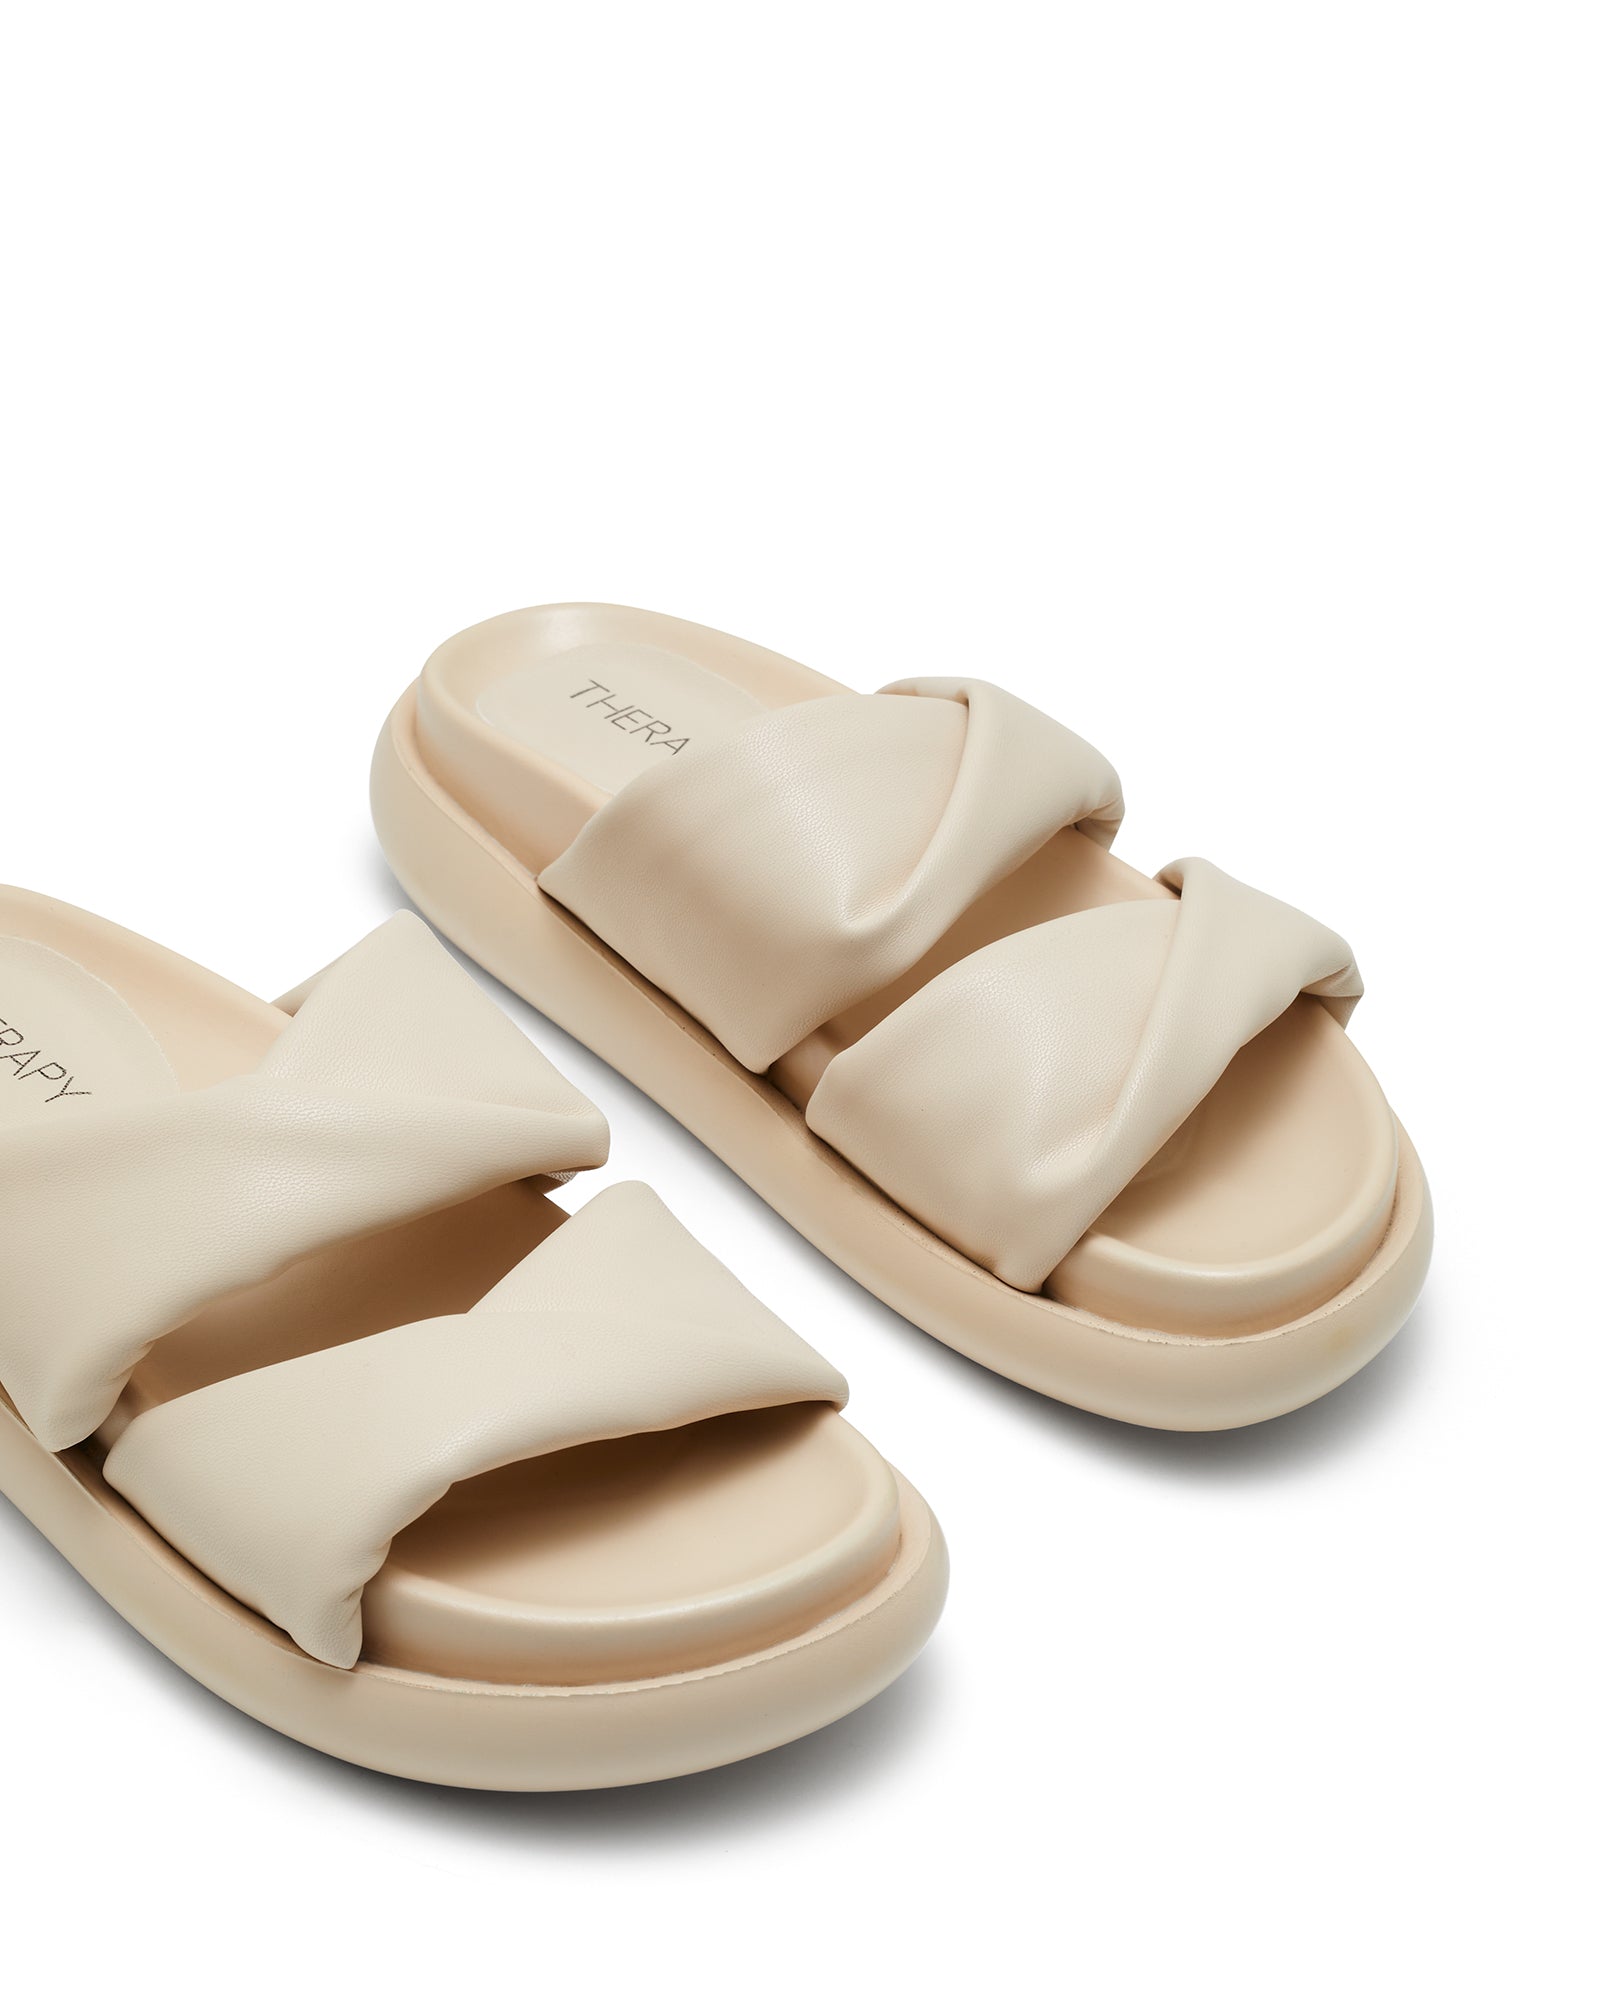 Therapy Shoes Vague Bone | Women's Sandals | Slides | Platform | Flatform